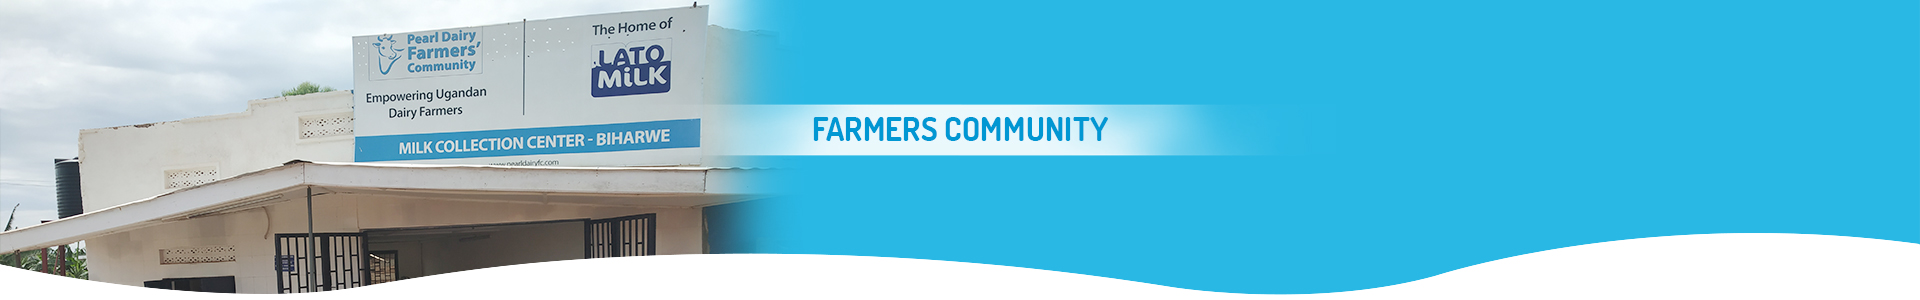 Farmers Community - Lato Milk